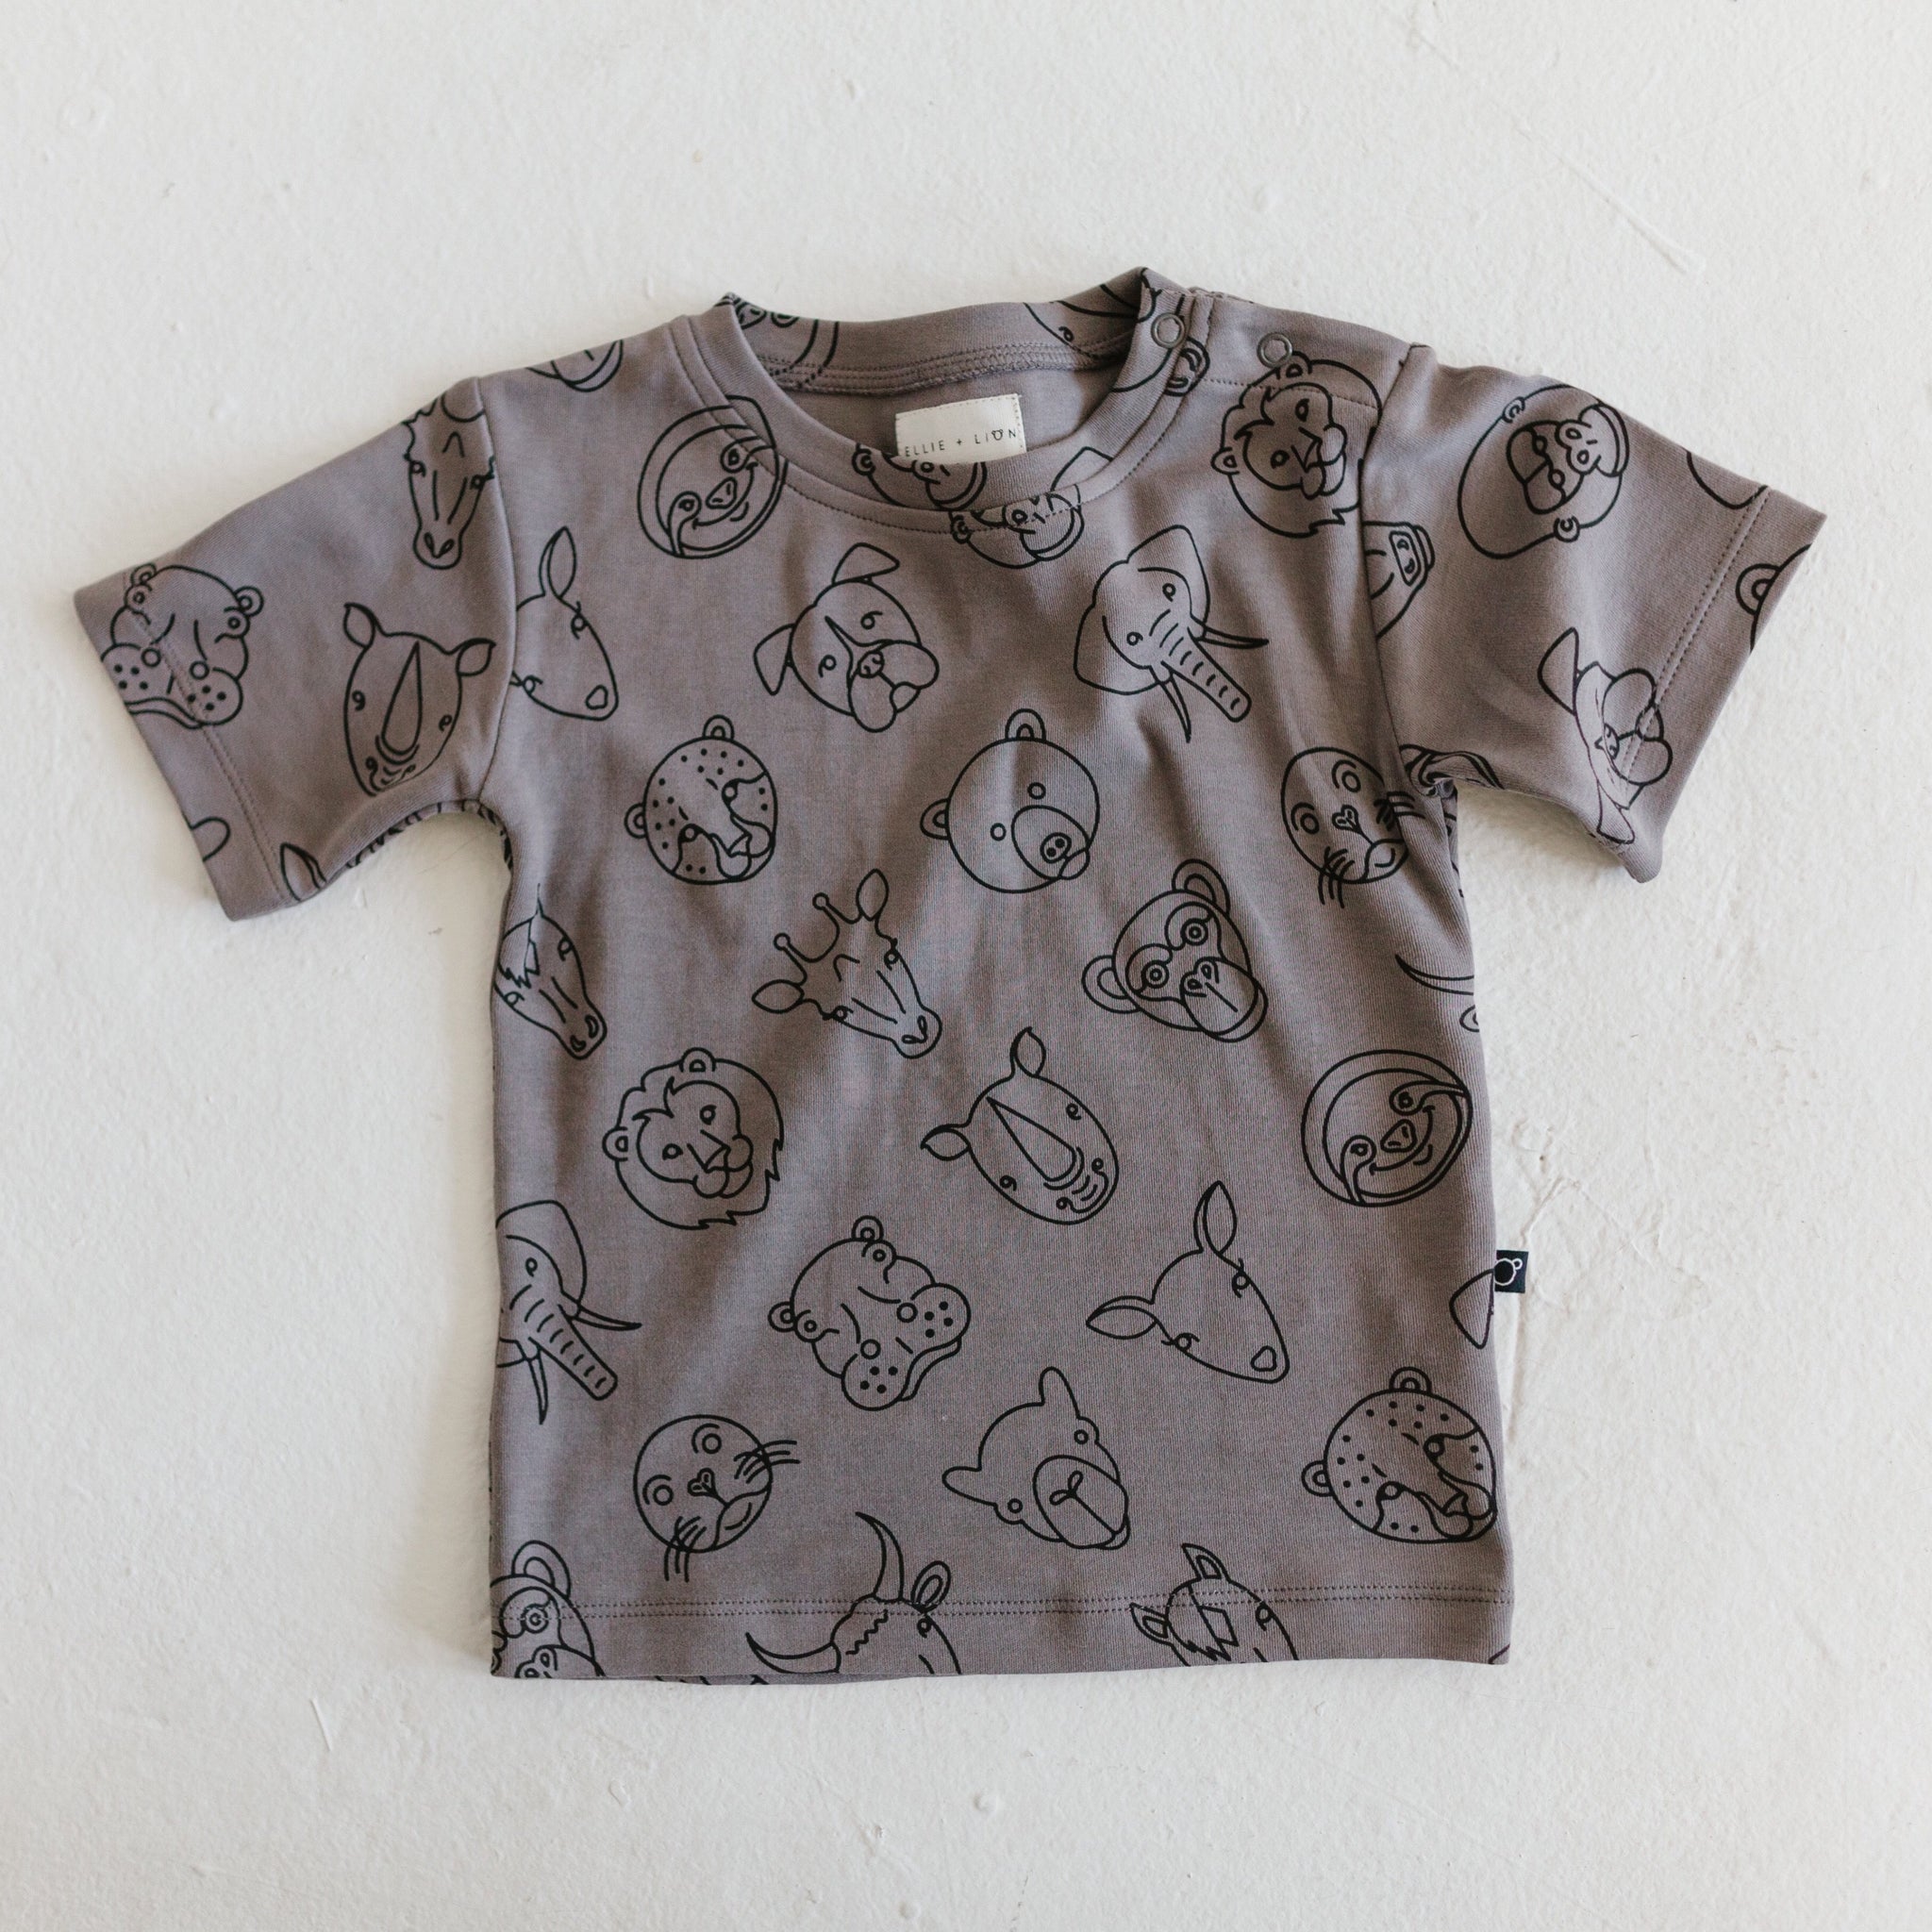 Animal motif t-shirt